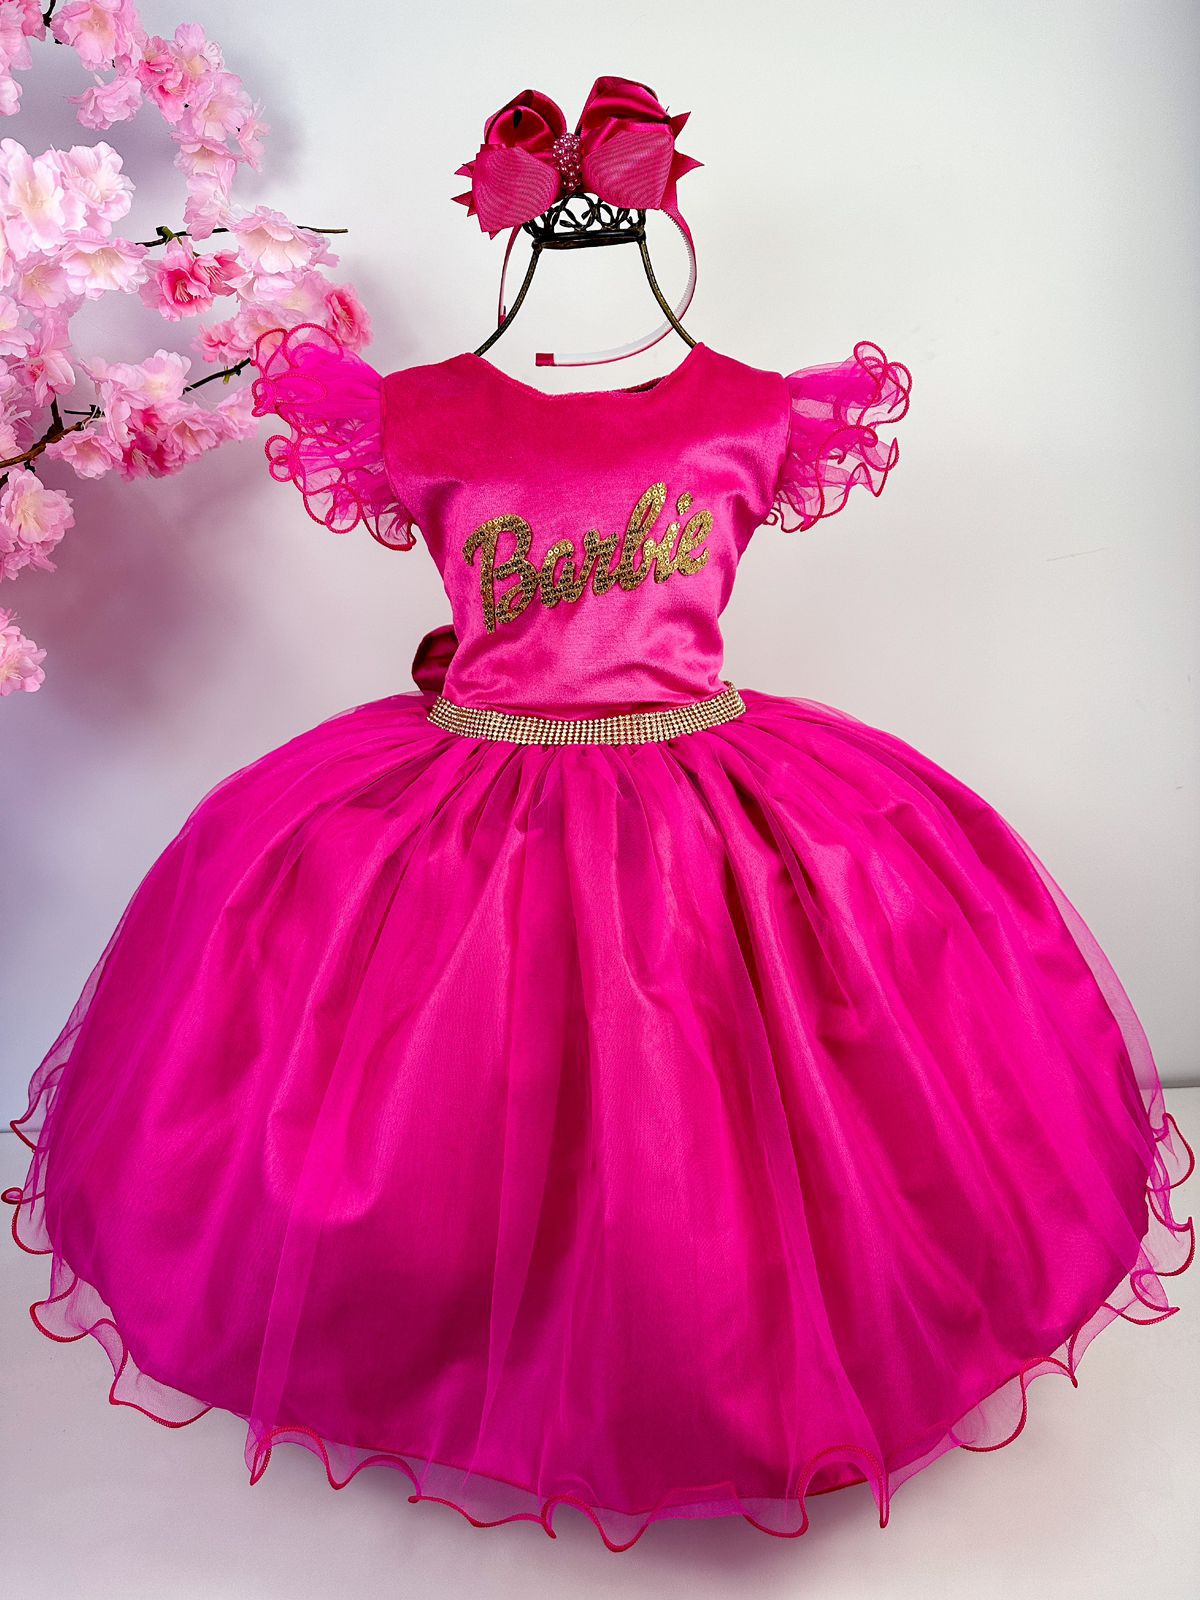 Vestido Barbie mod 4 - Comprar em Atelier Piccolina